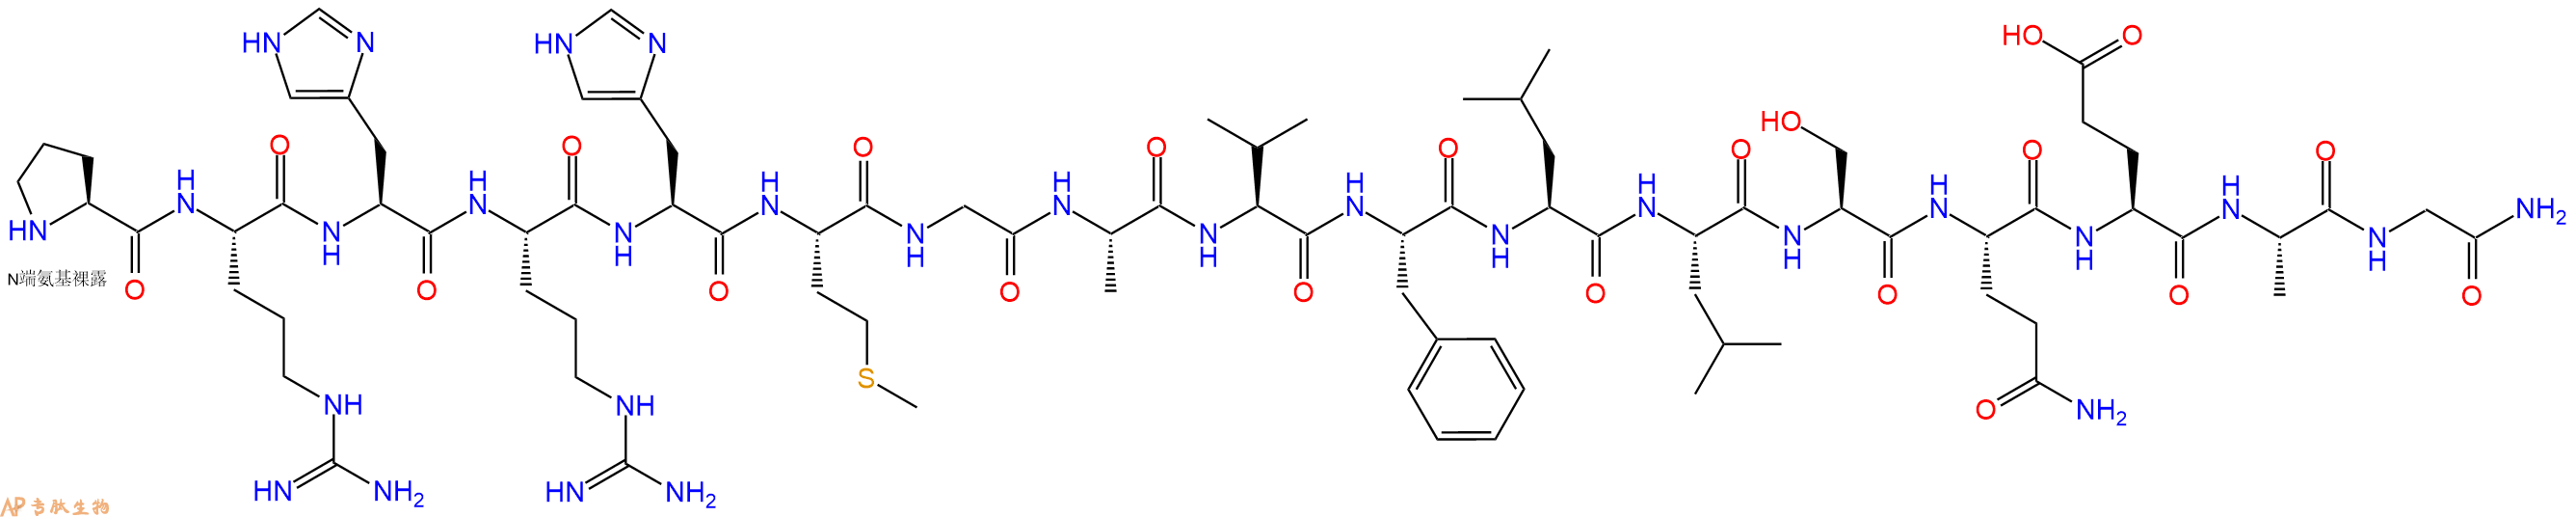 专肽生物产品α3β1 Integrin Peptide Fragment (325), amide